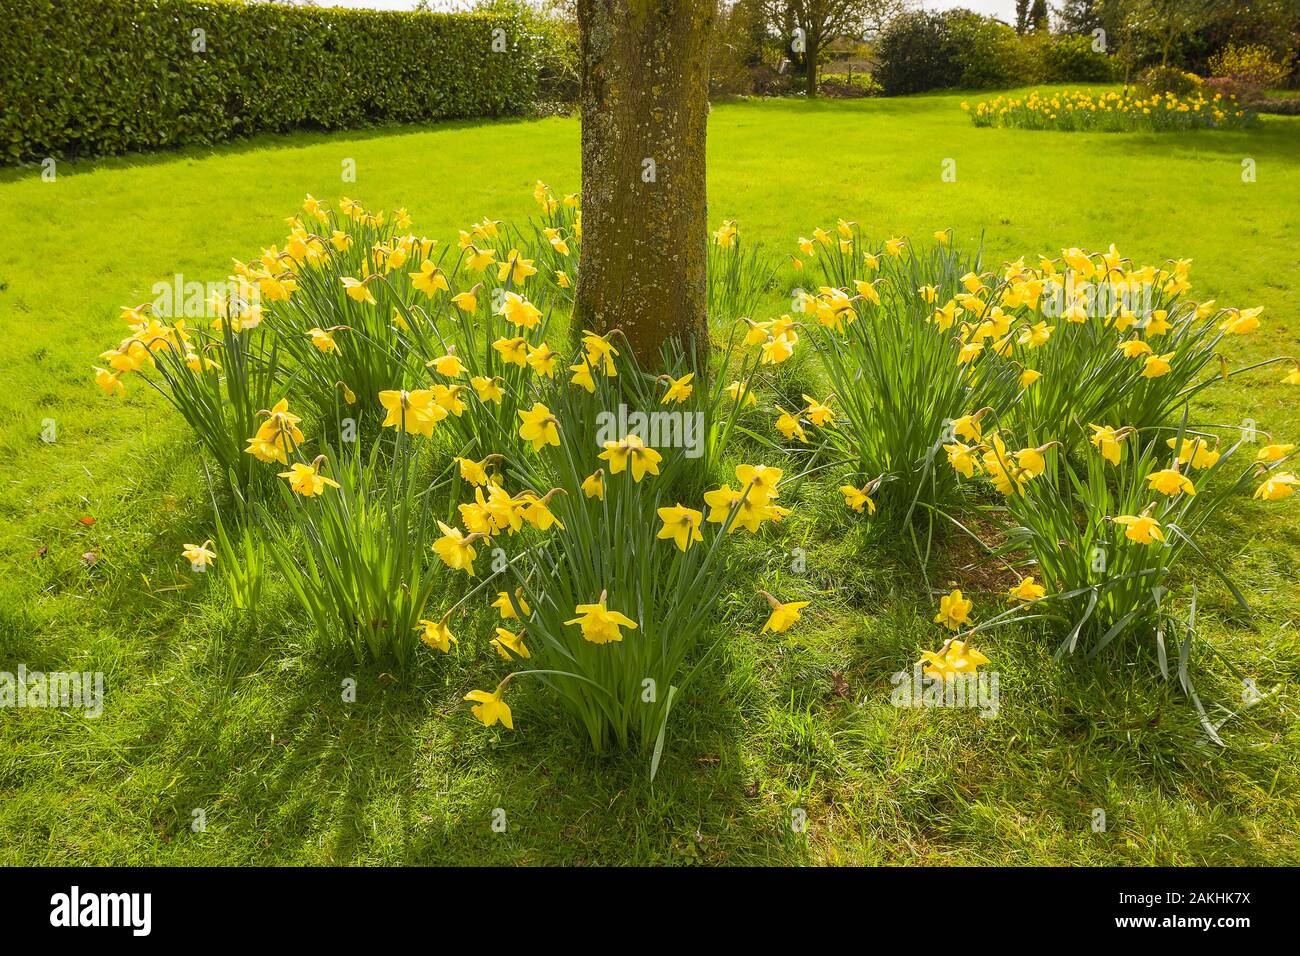 Eingebürgerte Narzissen blühen im März um den Ahornbaum in einem englischen Garten Stockfoto